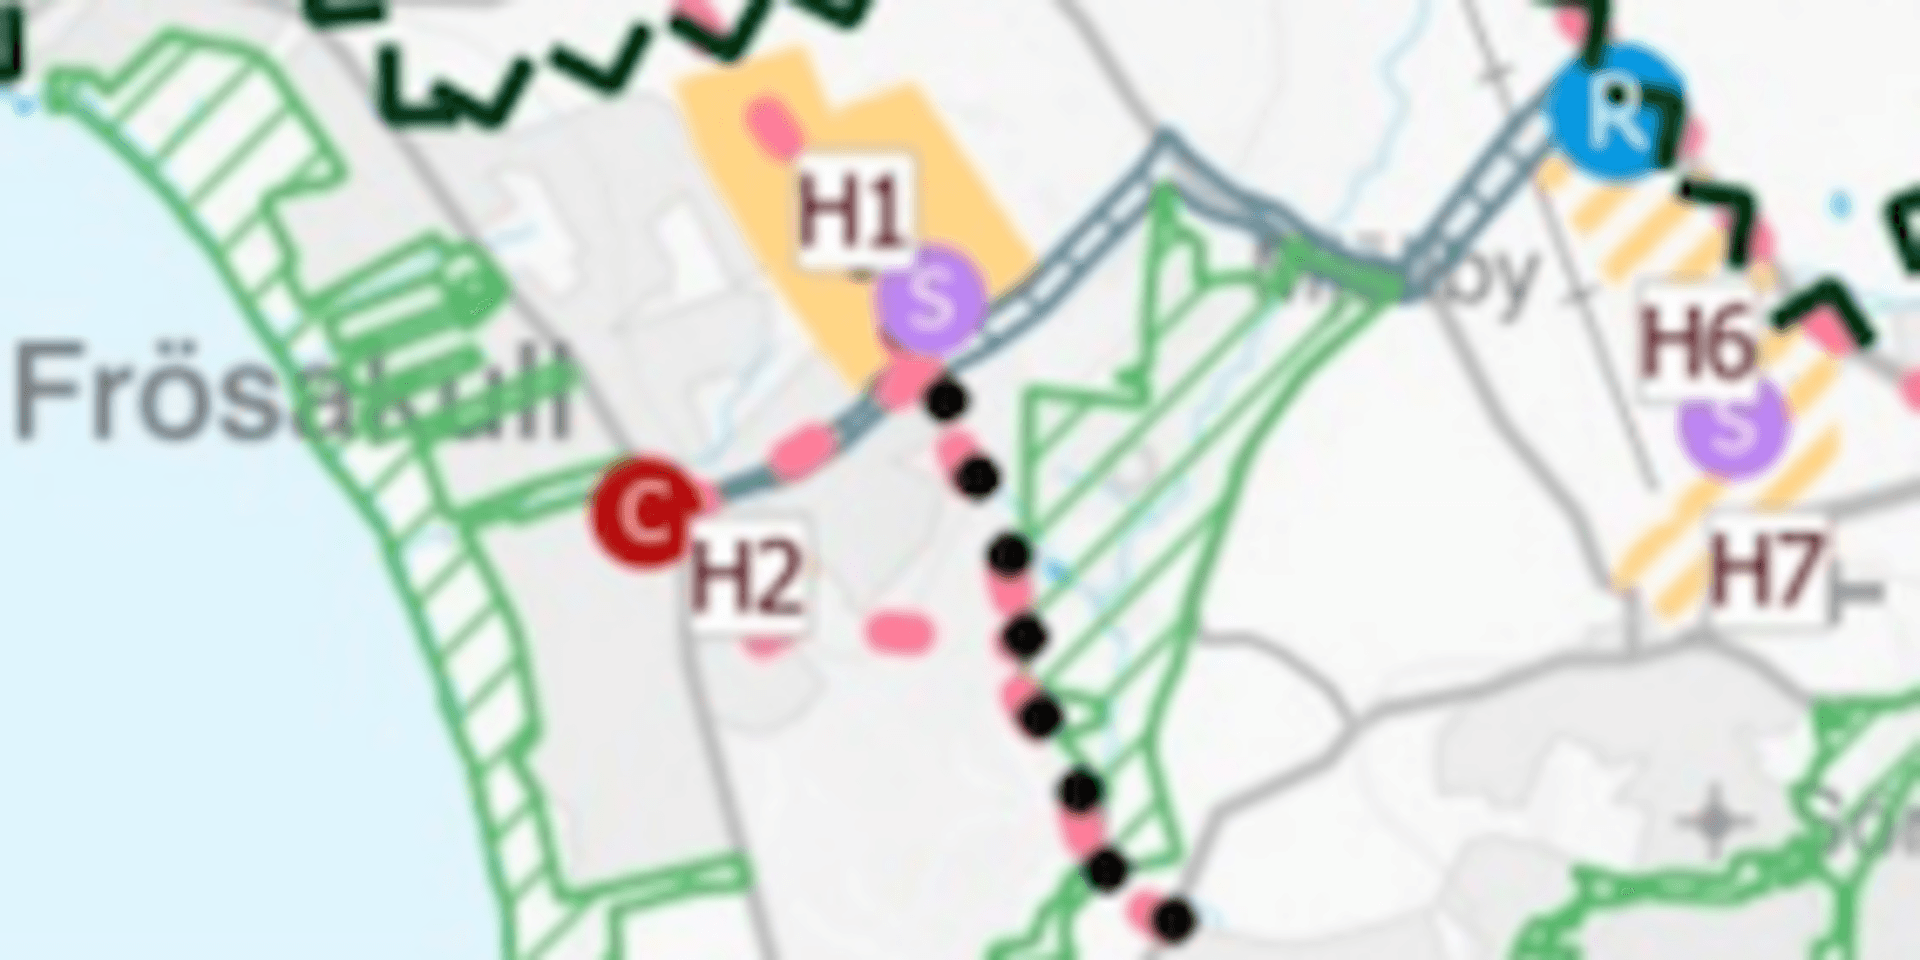 H1 och H2:s placering enligt kommunens förslag till översiktsplan.